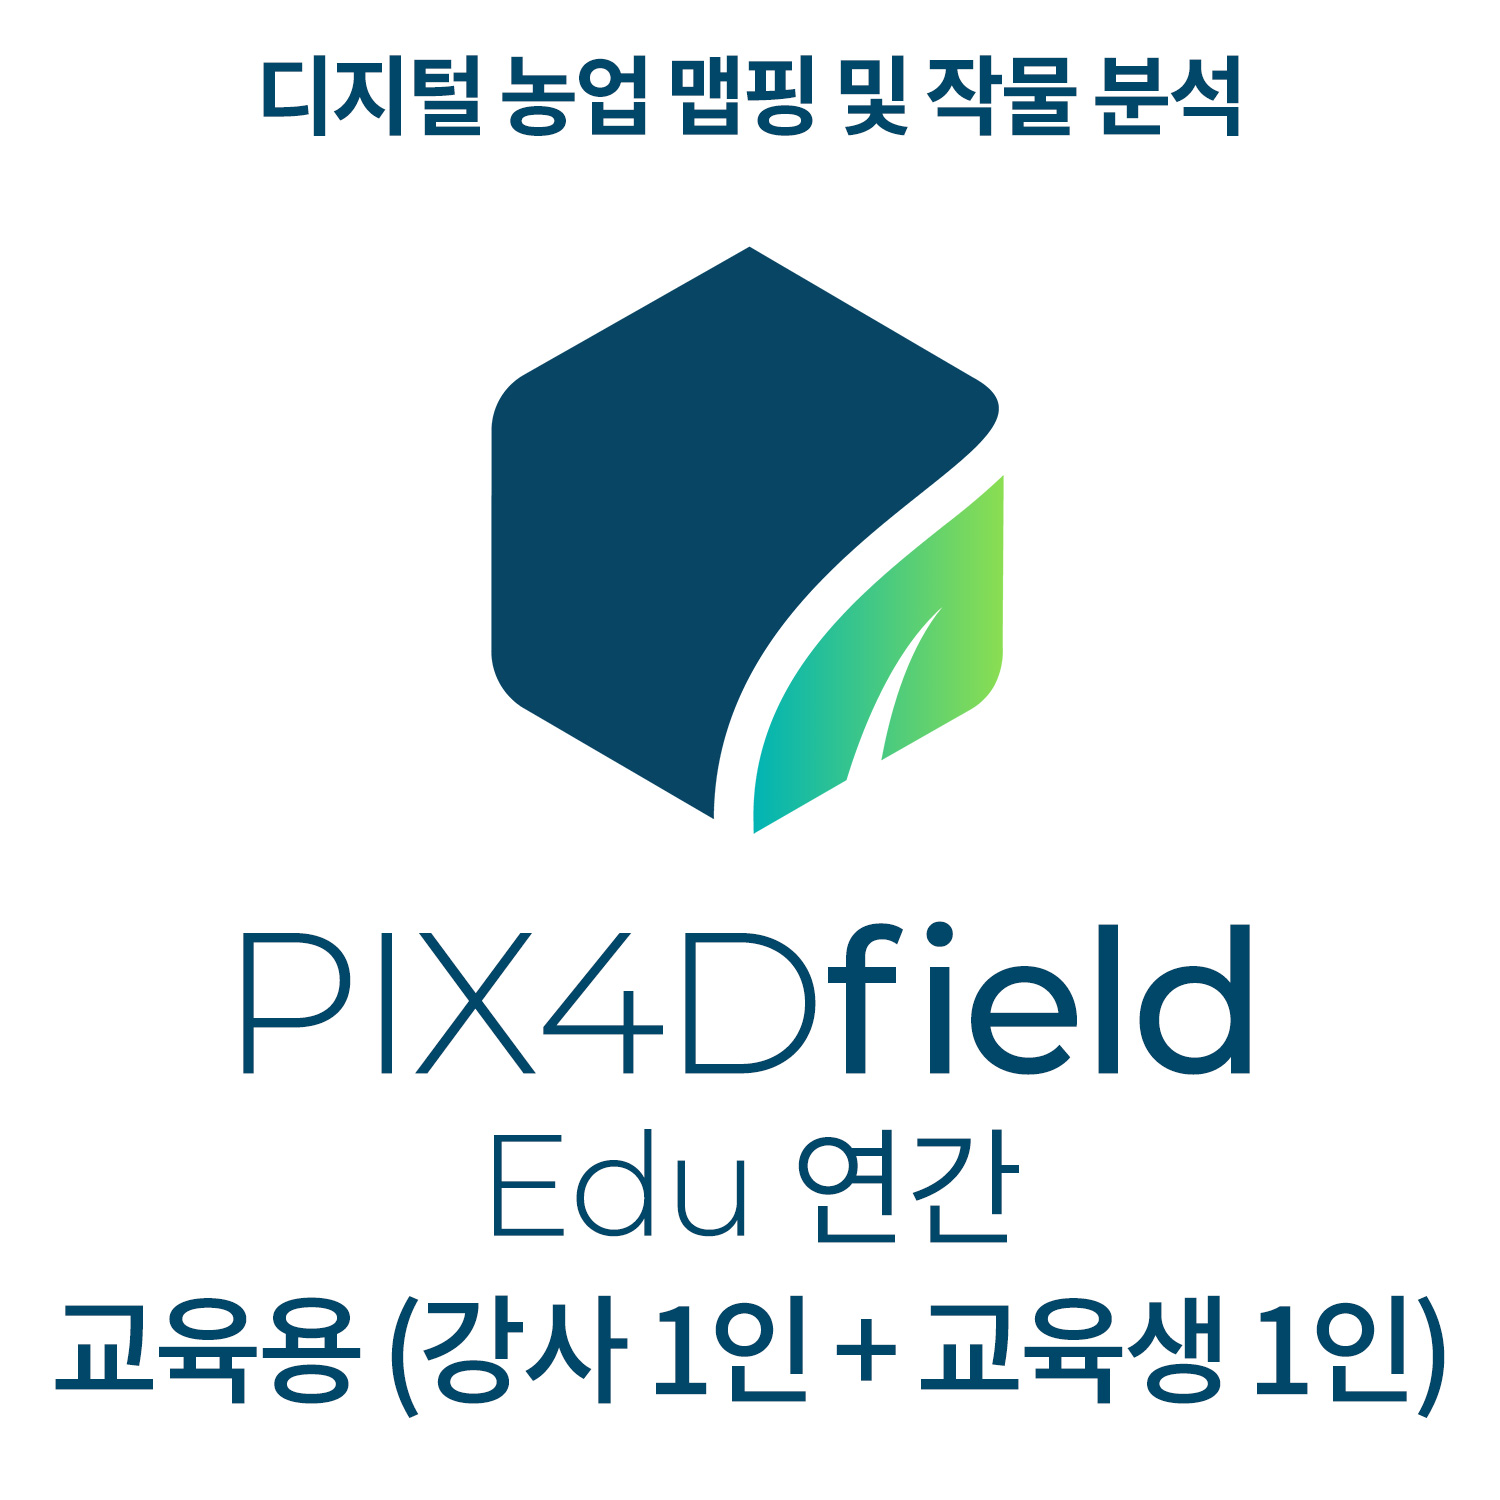 PIX4Dfields EDU교육기관-학교(강사 1인 + 교육생 1인)(연간이용) 헬셀